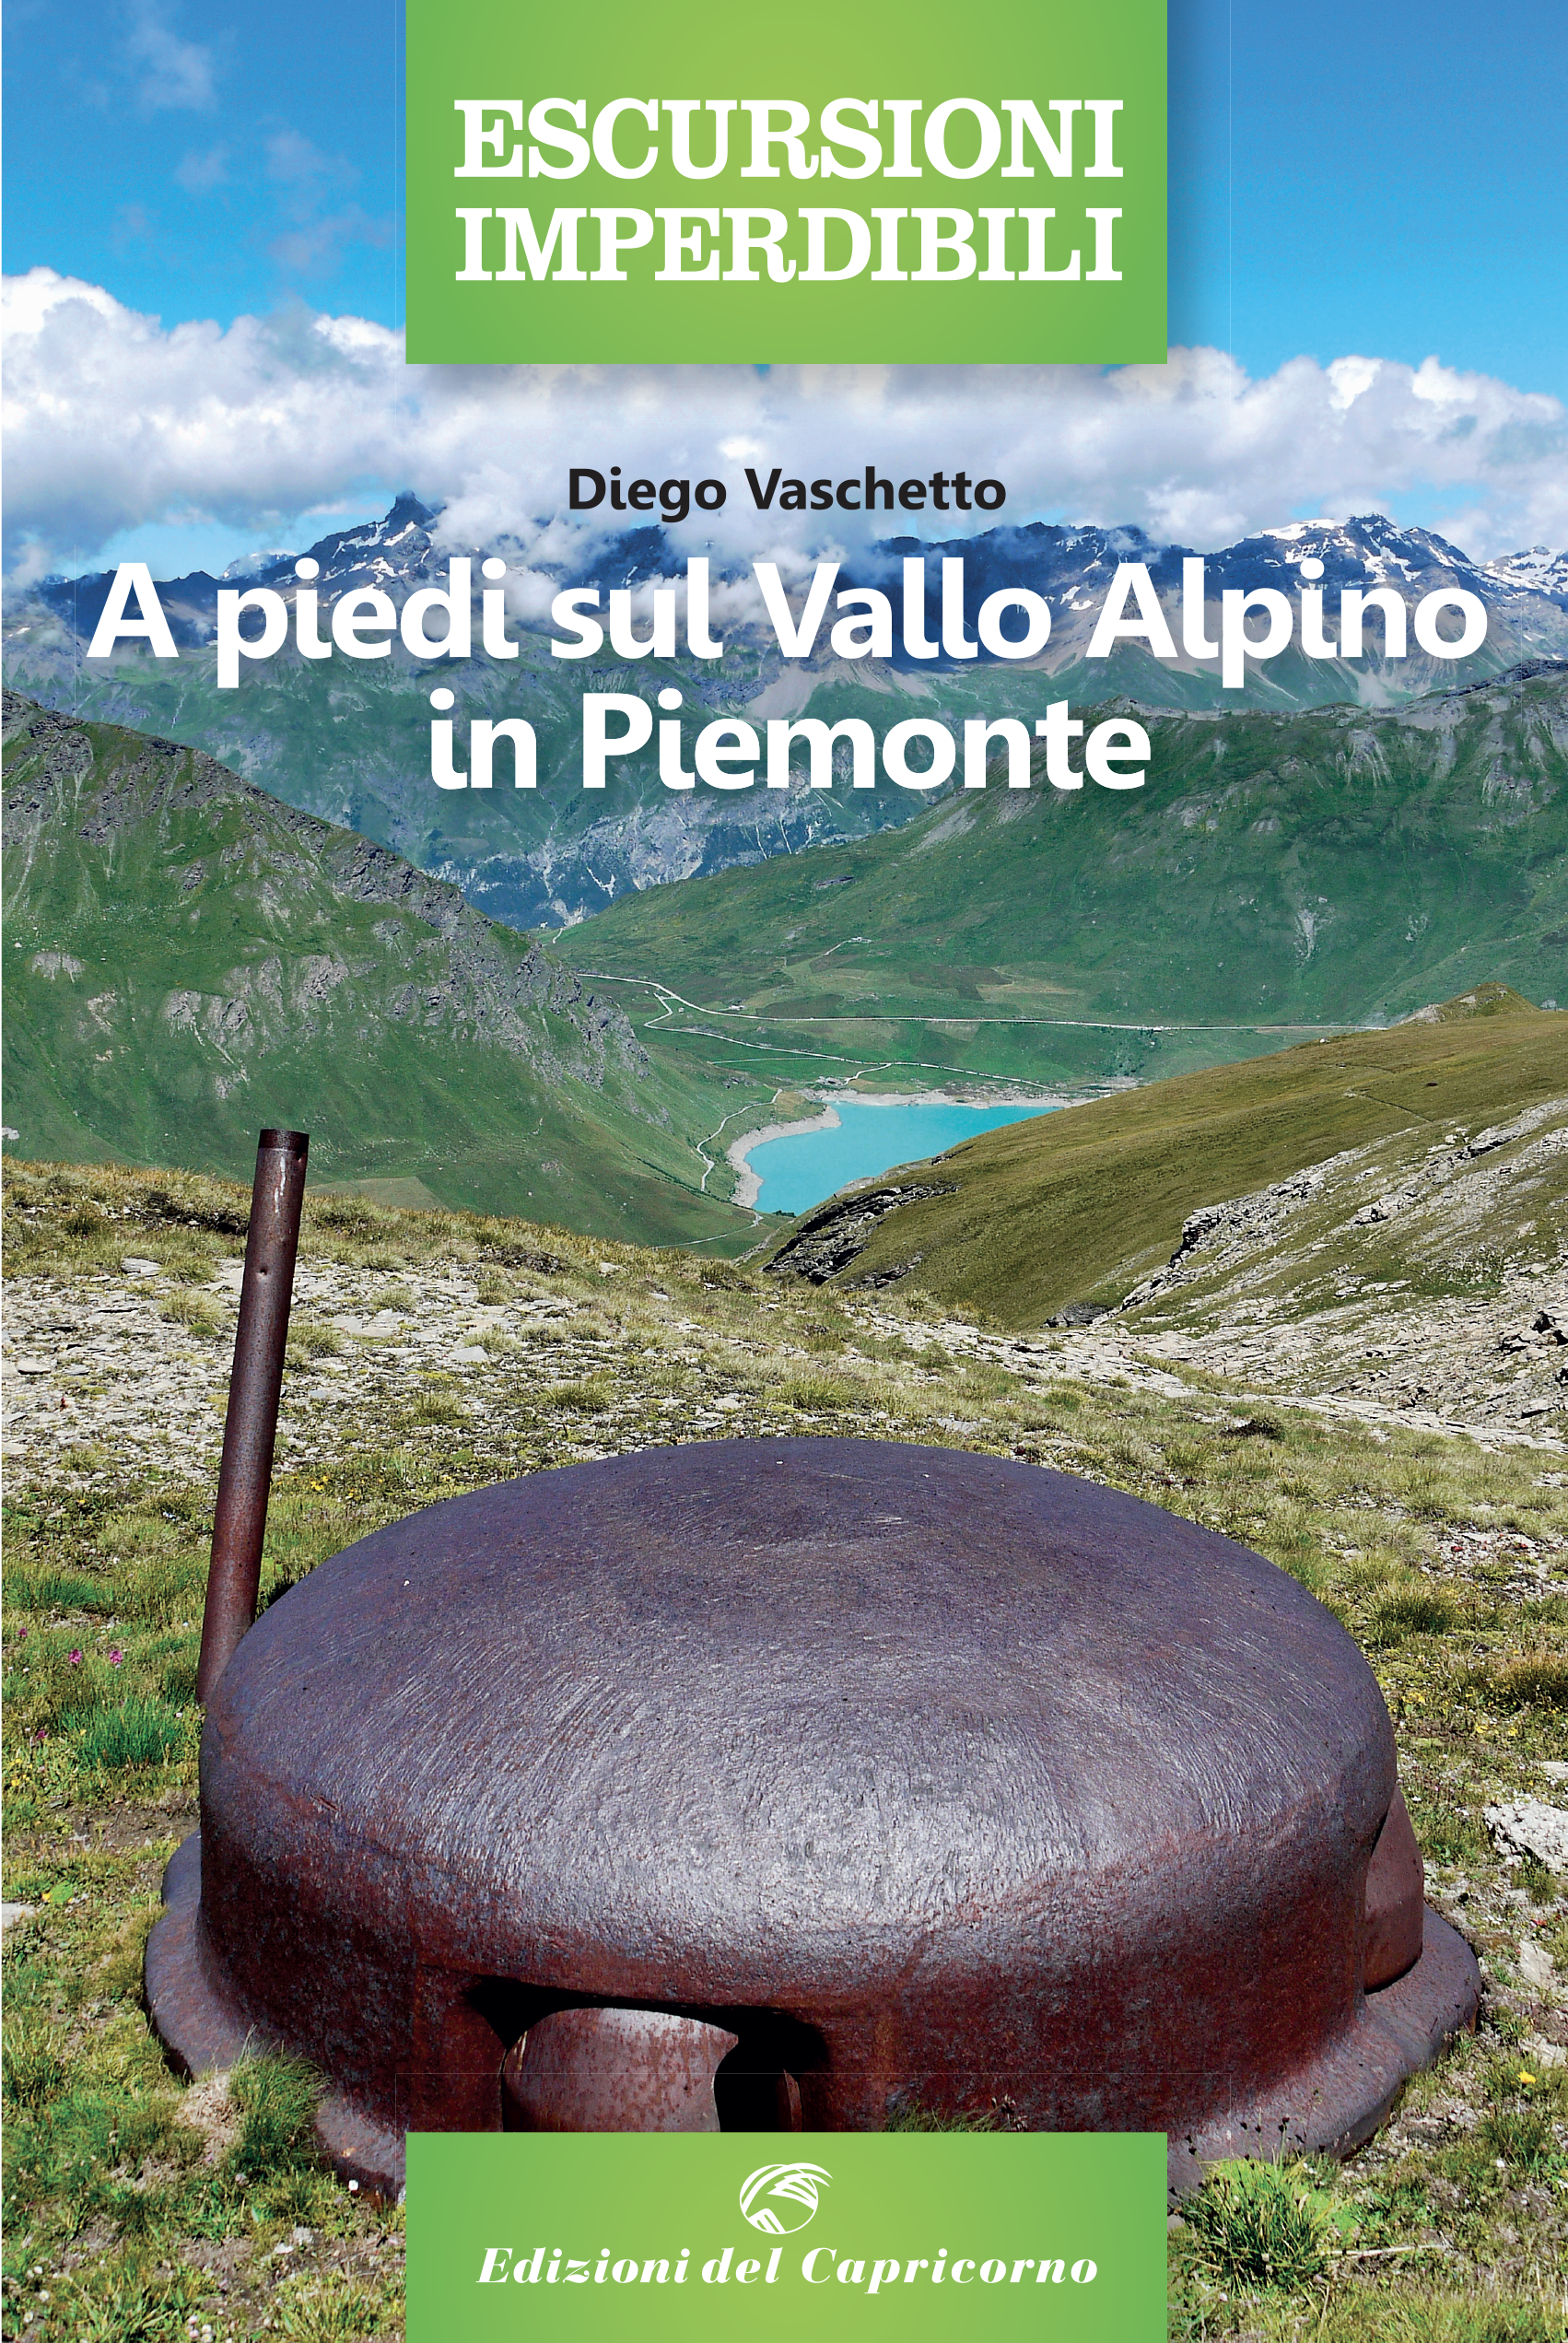 A piedi sul Vallo Alpino in Piemonte